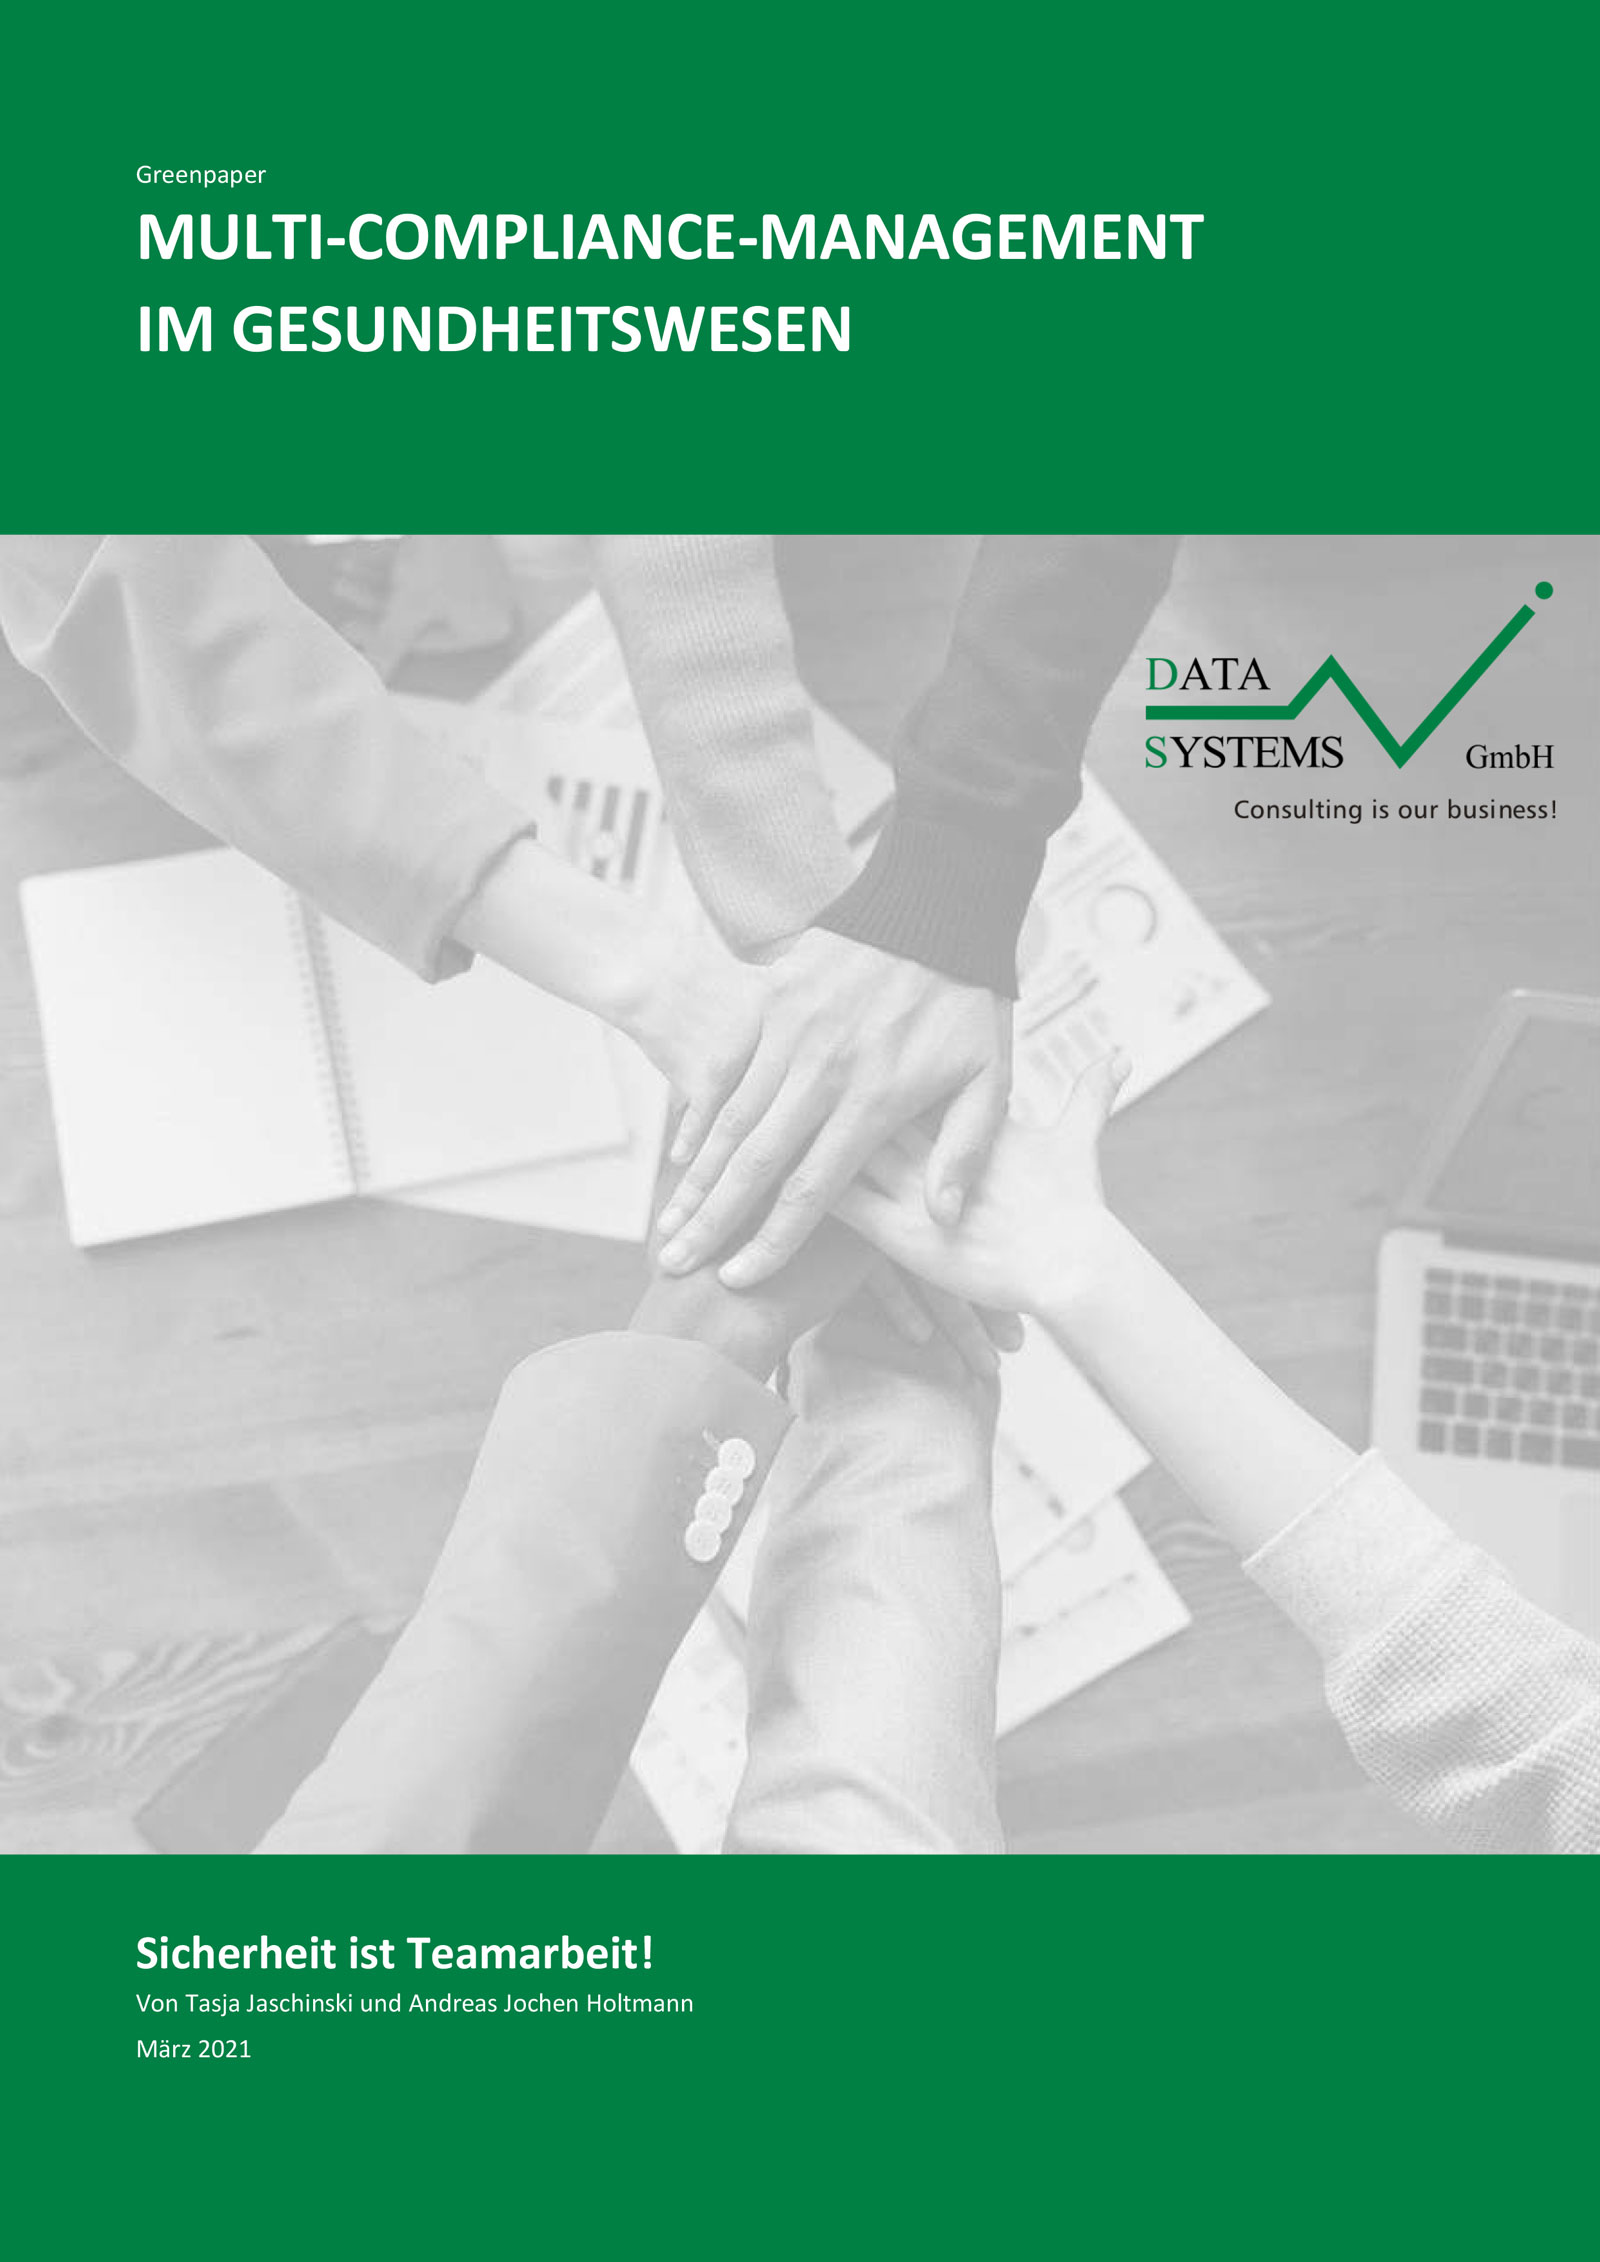 Greenpaper “Multi-Compliance-Management im Gesundheitswesen”